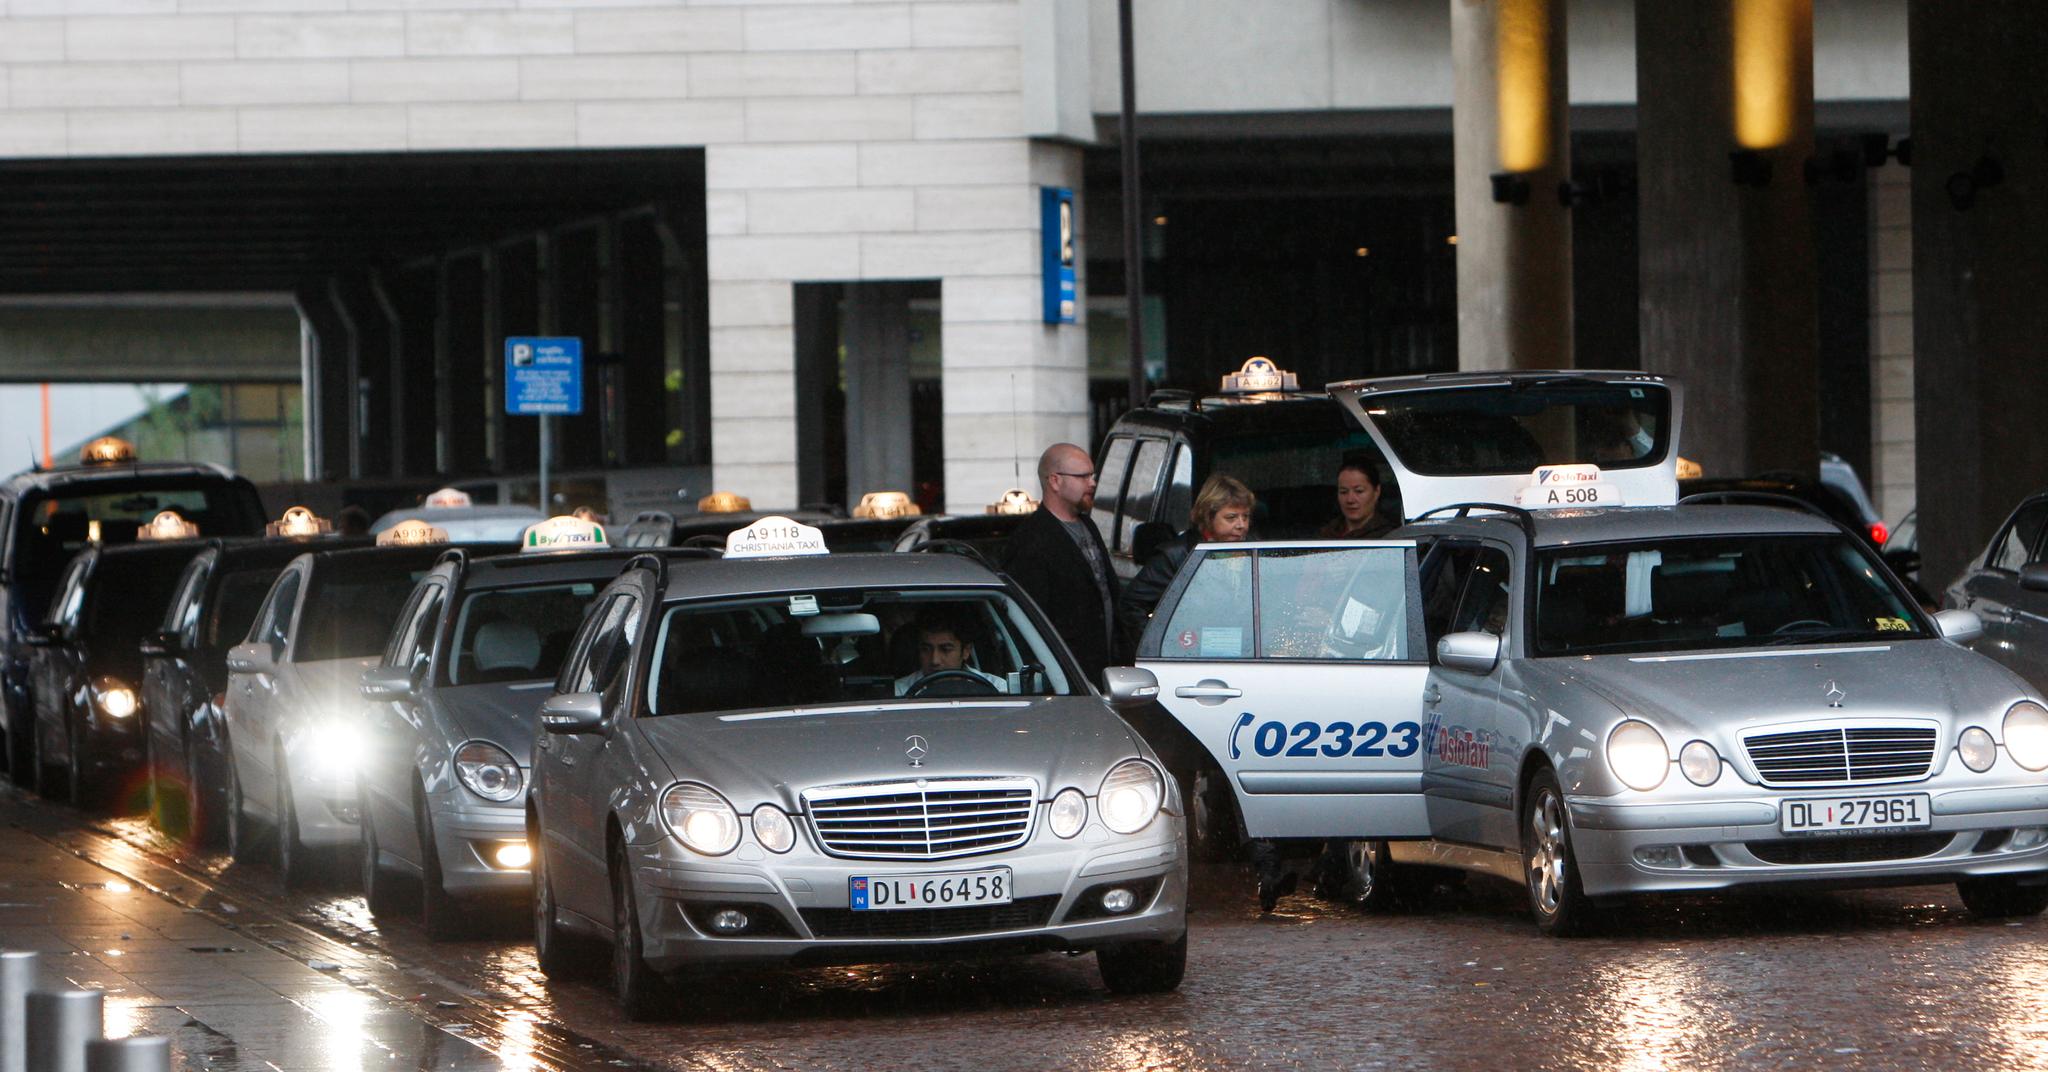 Flere hundre taxisjåfører i Oslo har søkt om å få eget taxiløyve fordi de da vil være sin egen herre og kunne tjene mer.